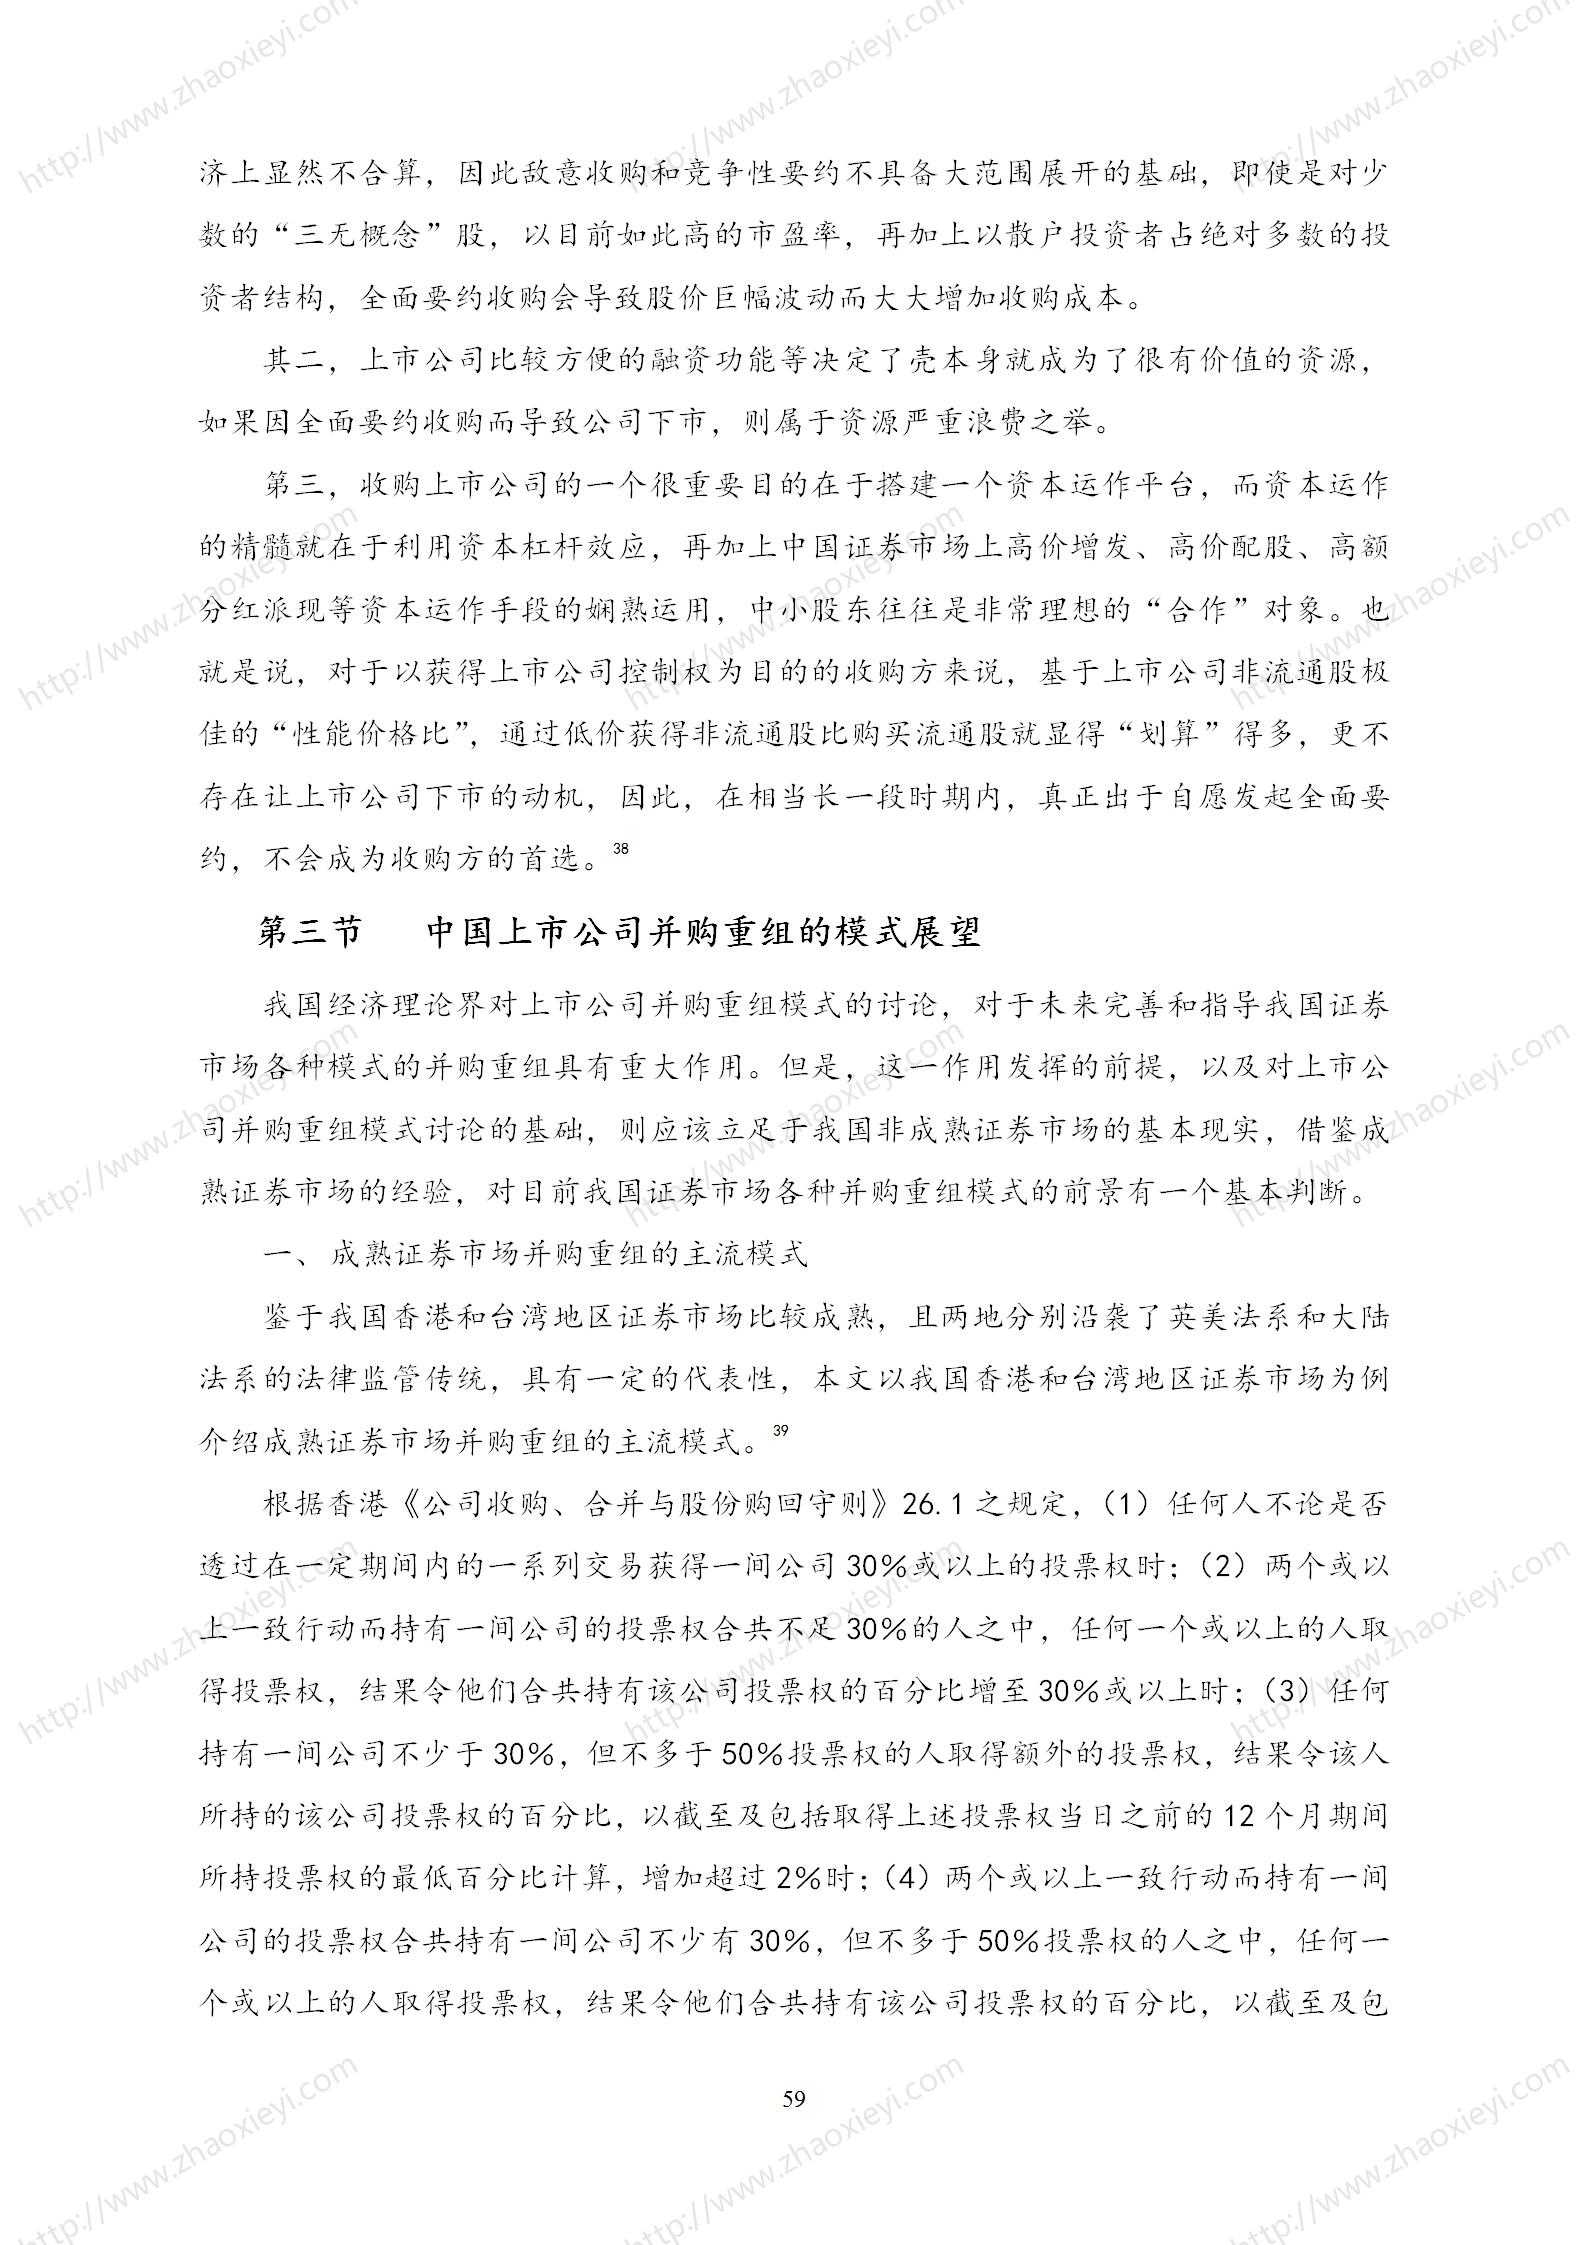 中国上市公司并购重组的模式研究_30.jpg